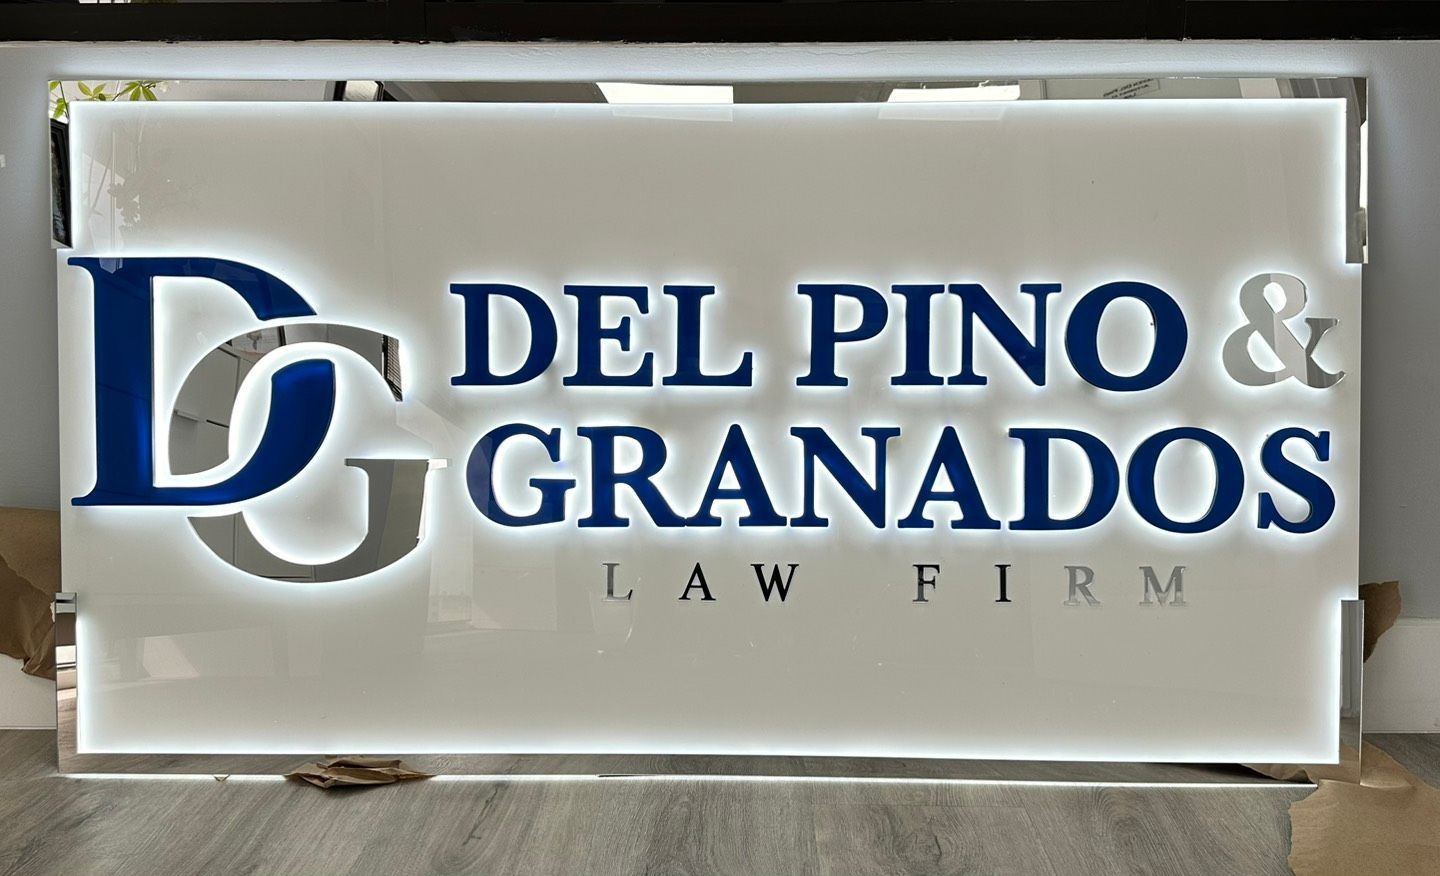 Del Pino & Granados Law Firm Signage — Hialeah-Miami & Fort Myers, FL — Del Pino & Granados Law Firm